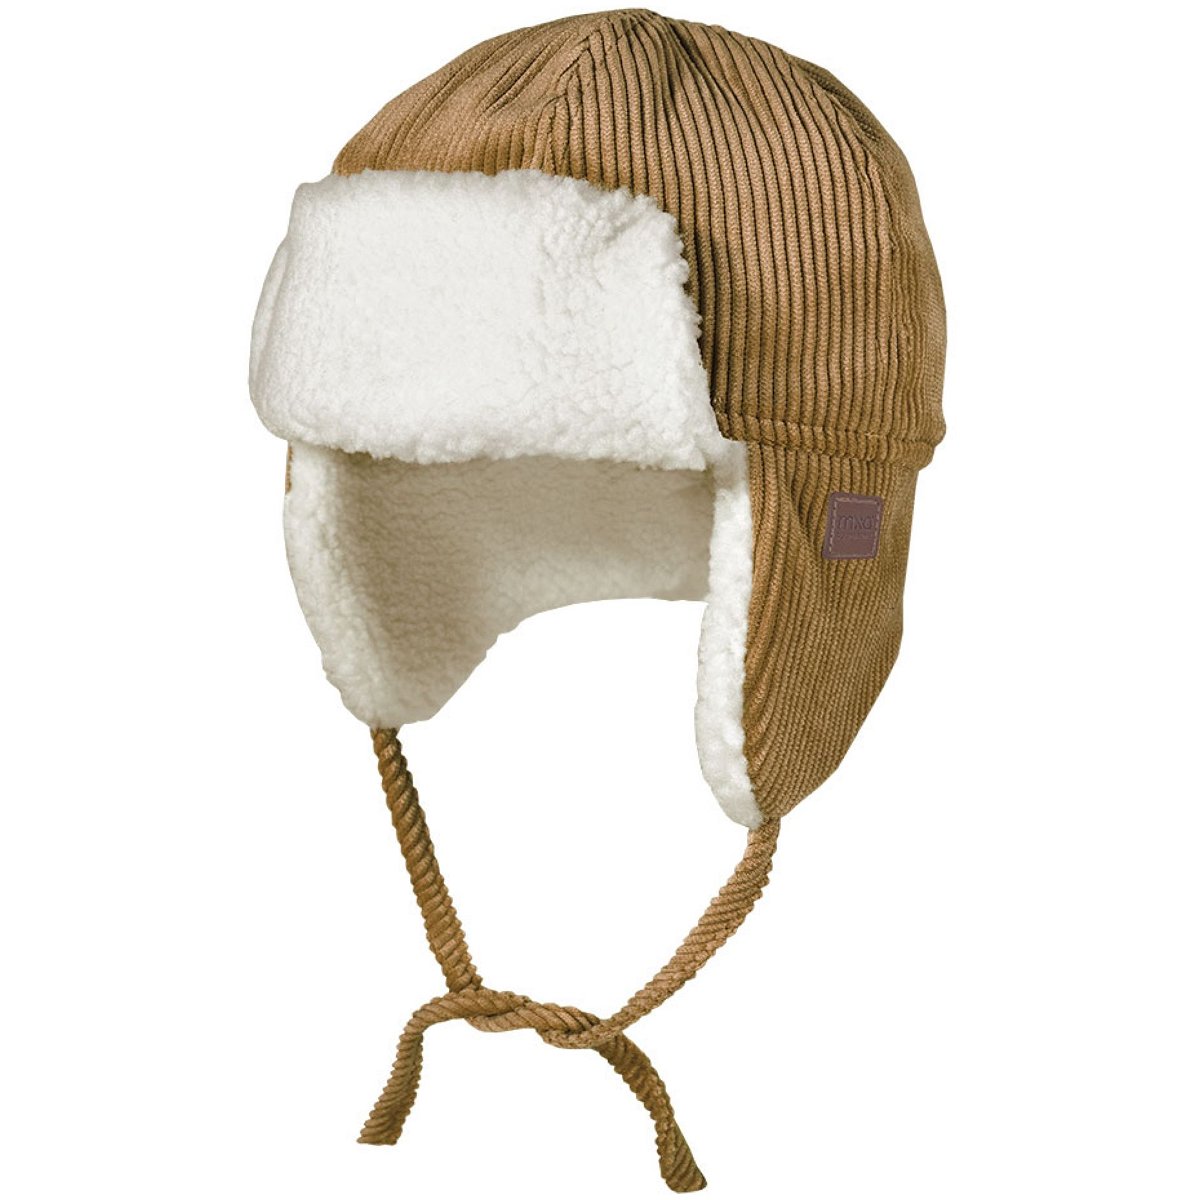 Cappelli invernali per neonati e bambini - caldi e alla moda